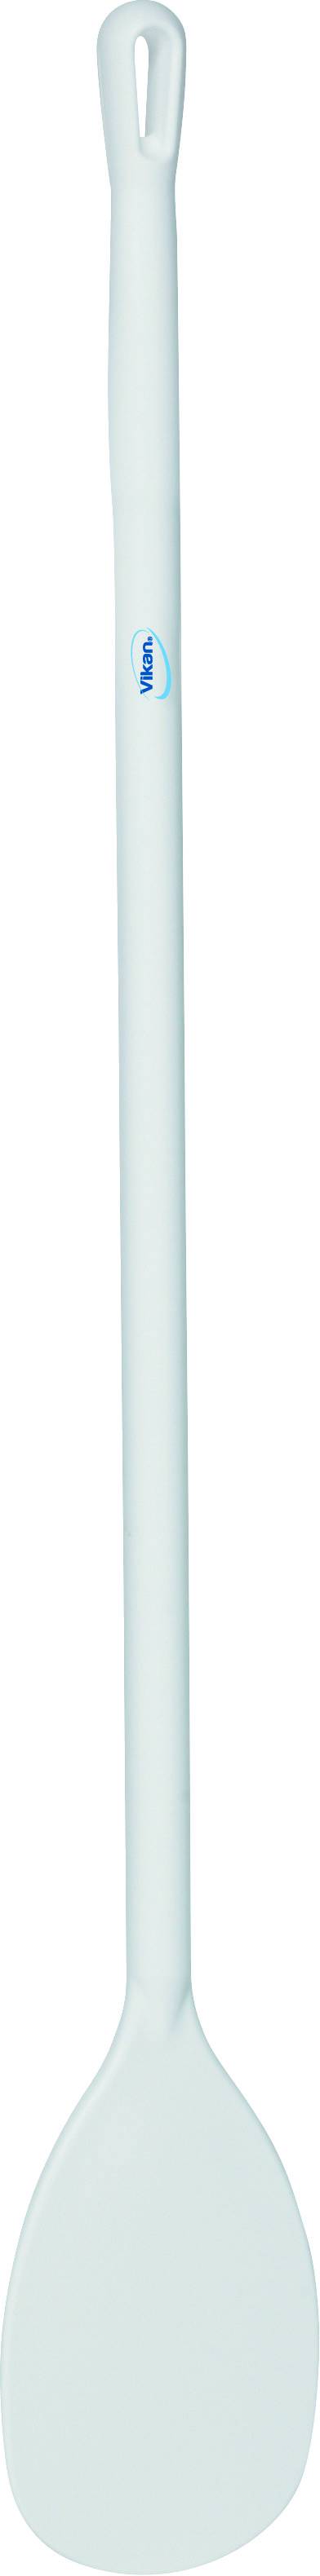 Мешалка Vikan с длинной рукояткой большая белая, 1200мм